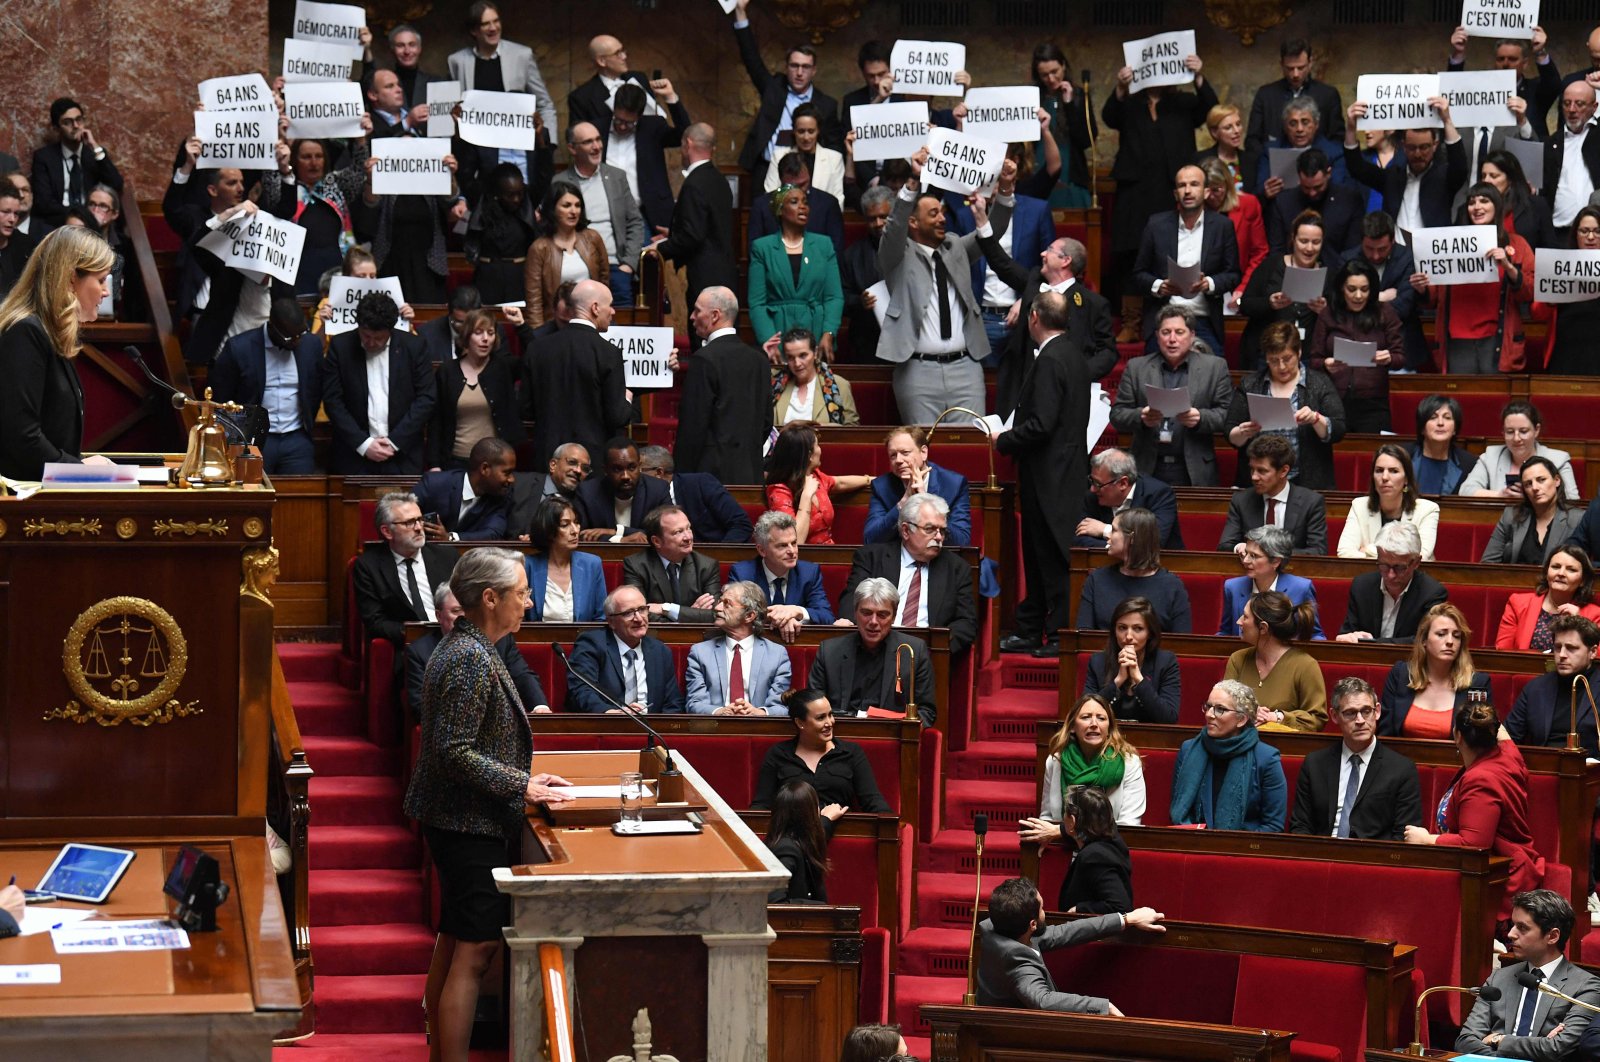 Prancis dalam kekacauan ketika pemerintah melakukan reformasi pensiun tanpa suara